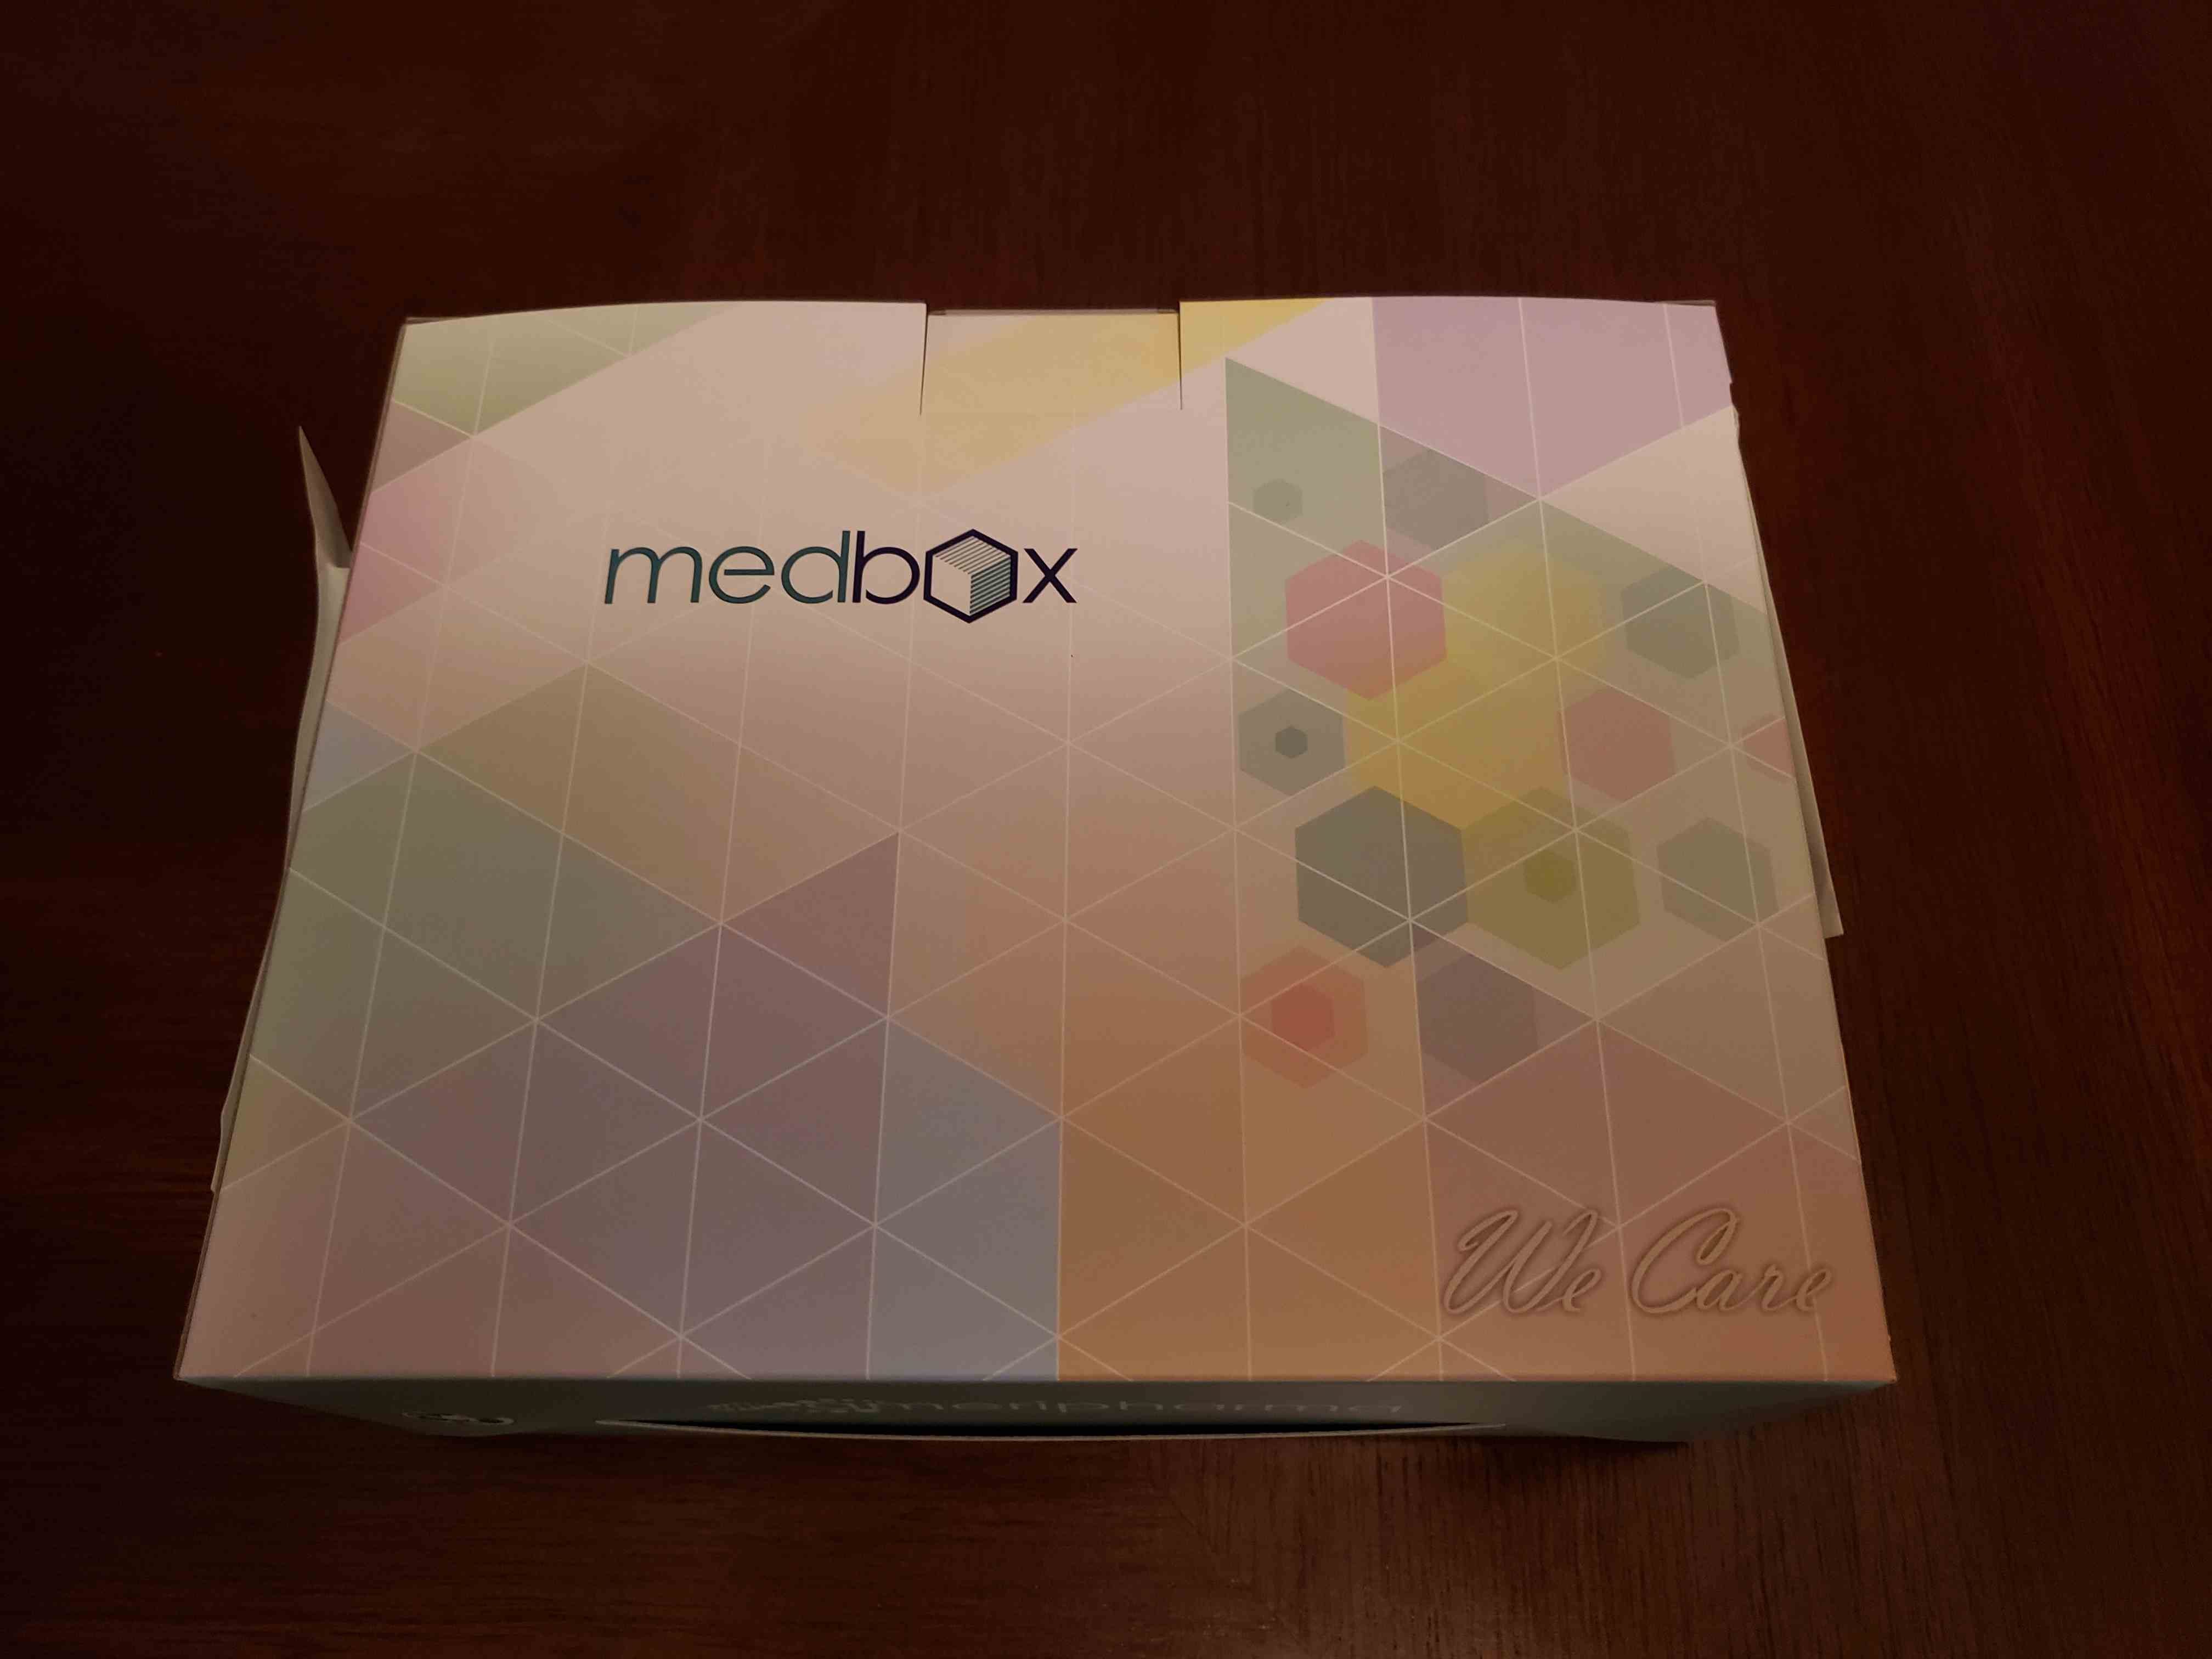 Medbox front